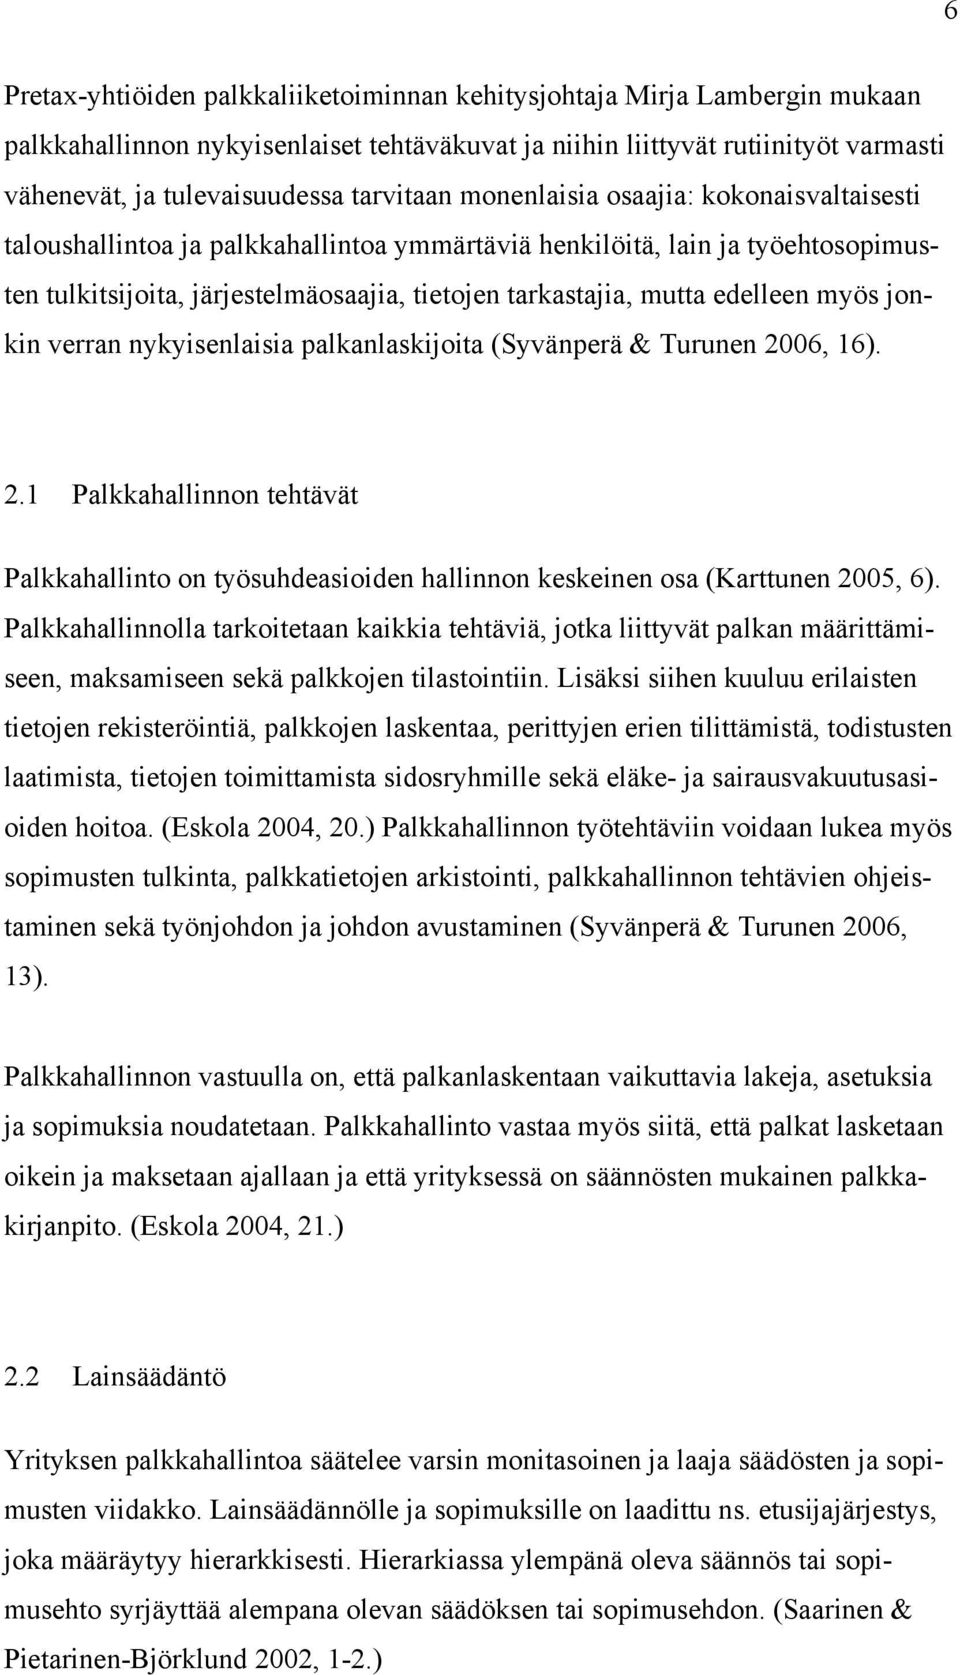 edelleen myös jonkin verran nykyisenlaisia palkanlaskijoita (Syvänperä & Turunen 2006, 16). 2.1 Palkkahallinnon tehtävät Palkkahallinto on työsuhdeasioiden hallinnon keskeinen osa (Karttunen 2005, 6).